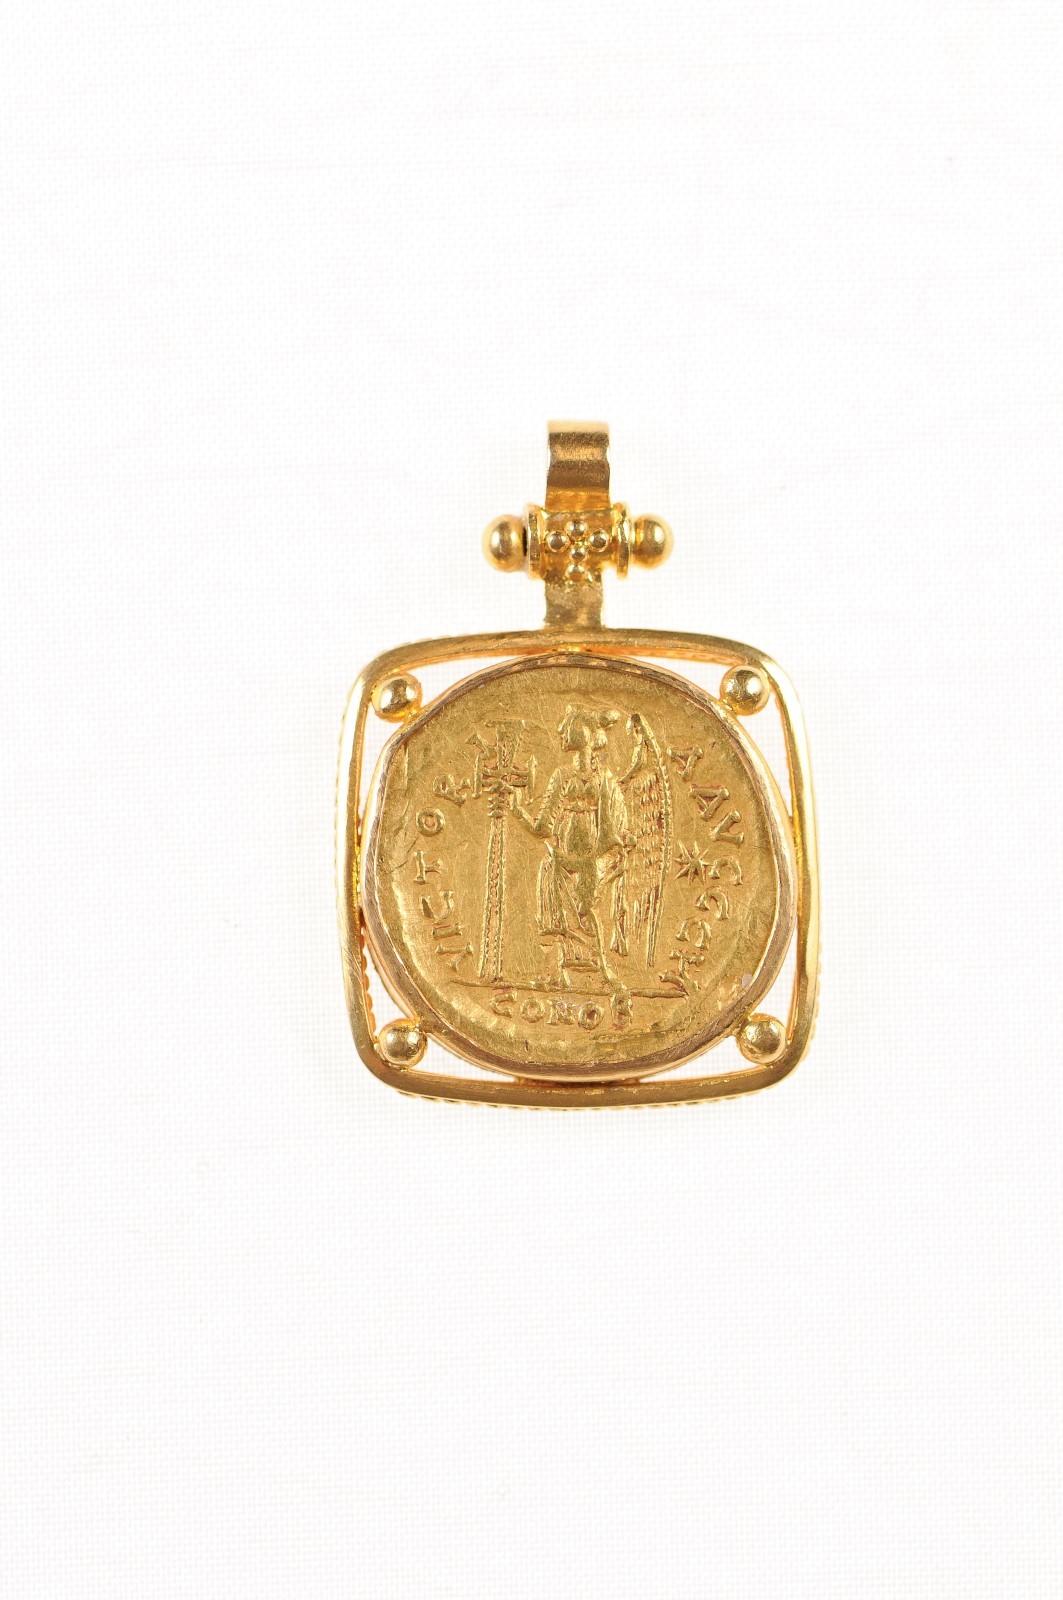 Eine authentische Zeno die zweite Herrschaft, AV Gold Solidus römische kaiserliche Münze (Constantinople Mint, ca. 476-491 AD), in einem quadratischen 22k Gold Lünette mit 22k Gold Bügel gesetzt. Die Vorderseite dieser Münze zeigt die mit Diadem,